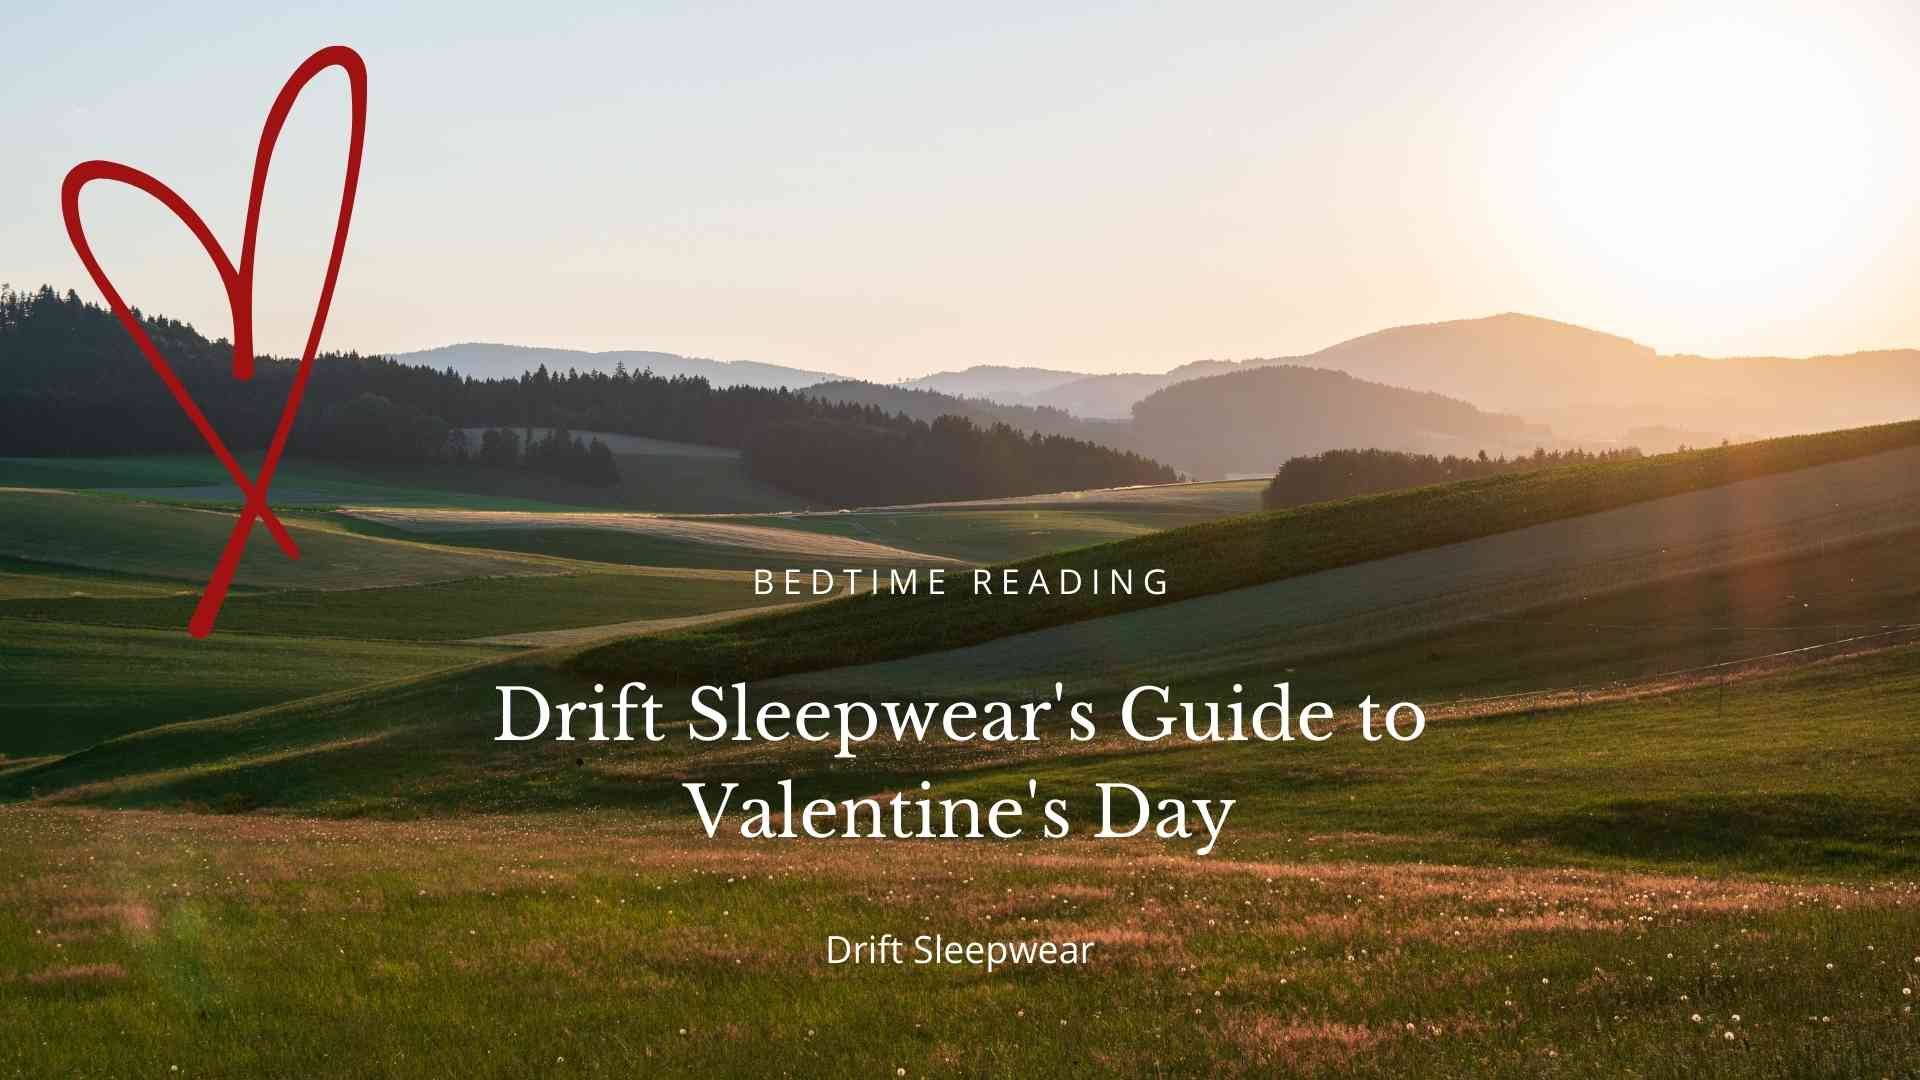 Drift Sleepwear's Guide to Valentine's Day